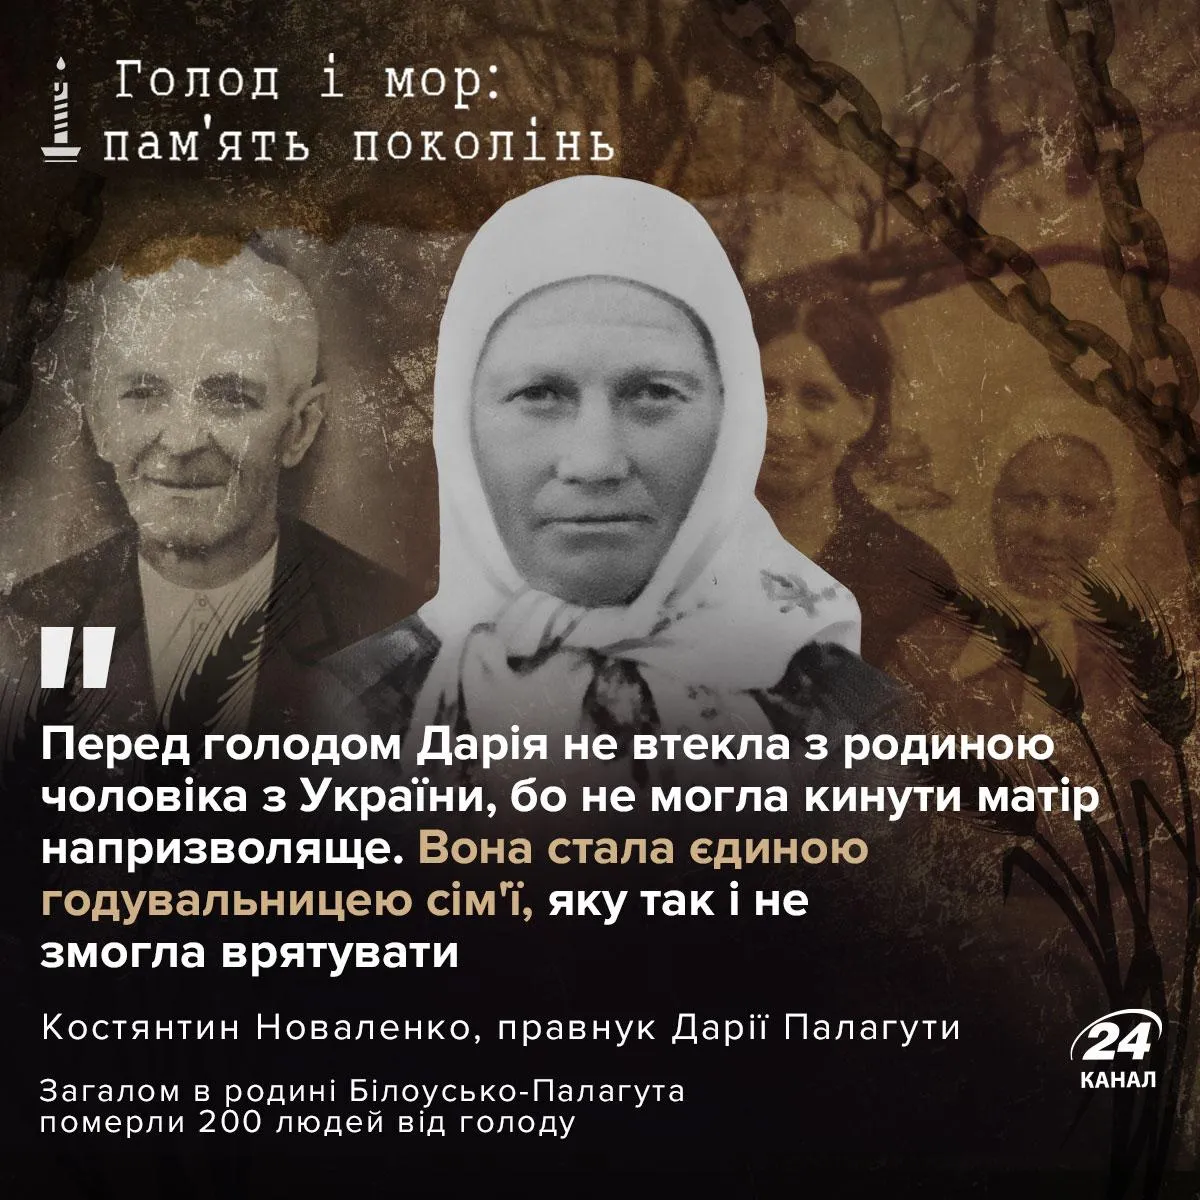 Дарина – єдина дитина Білоуськів, яка залишилася в Україні і пережила голодомор